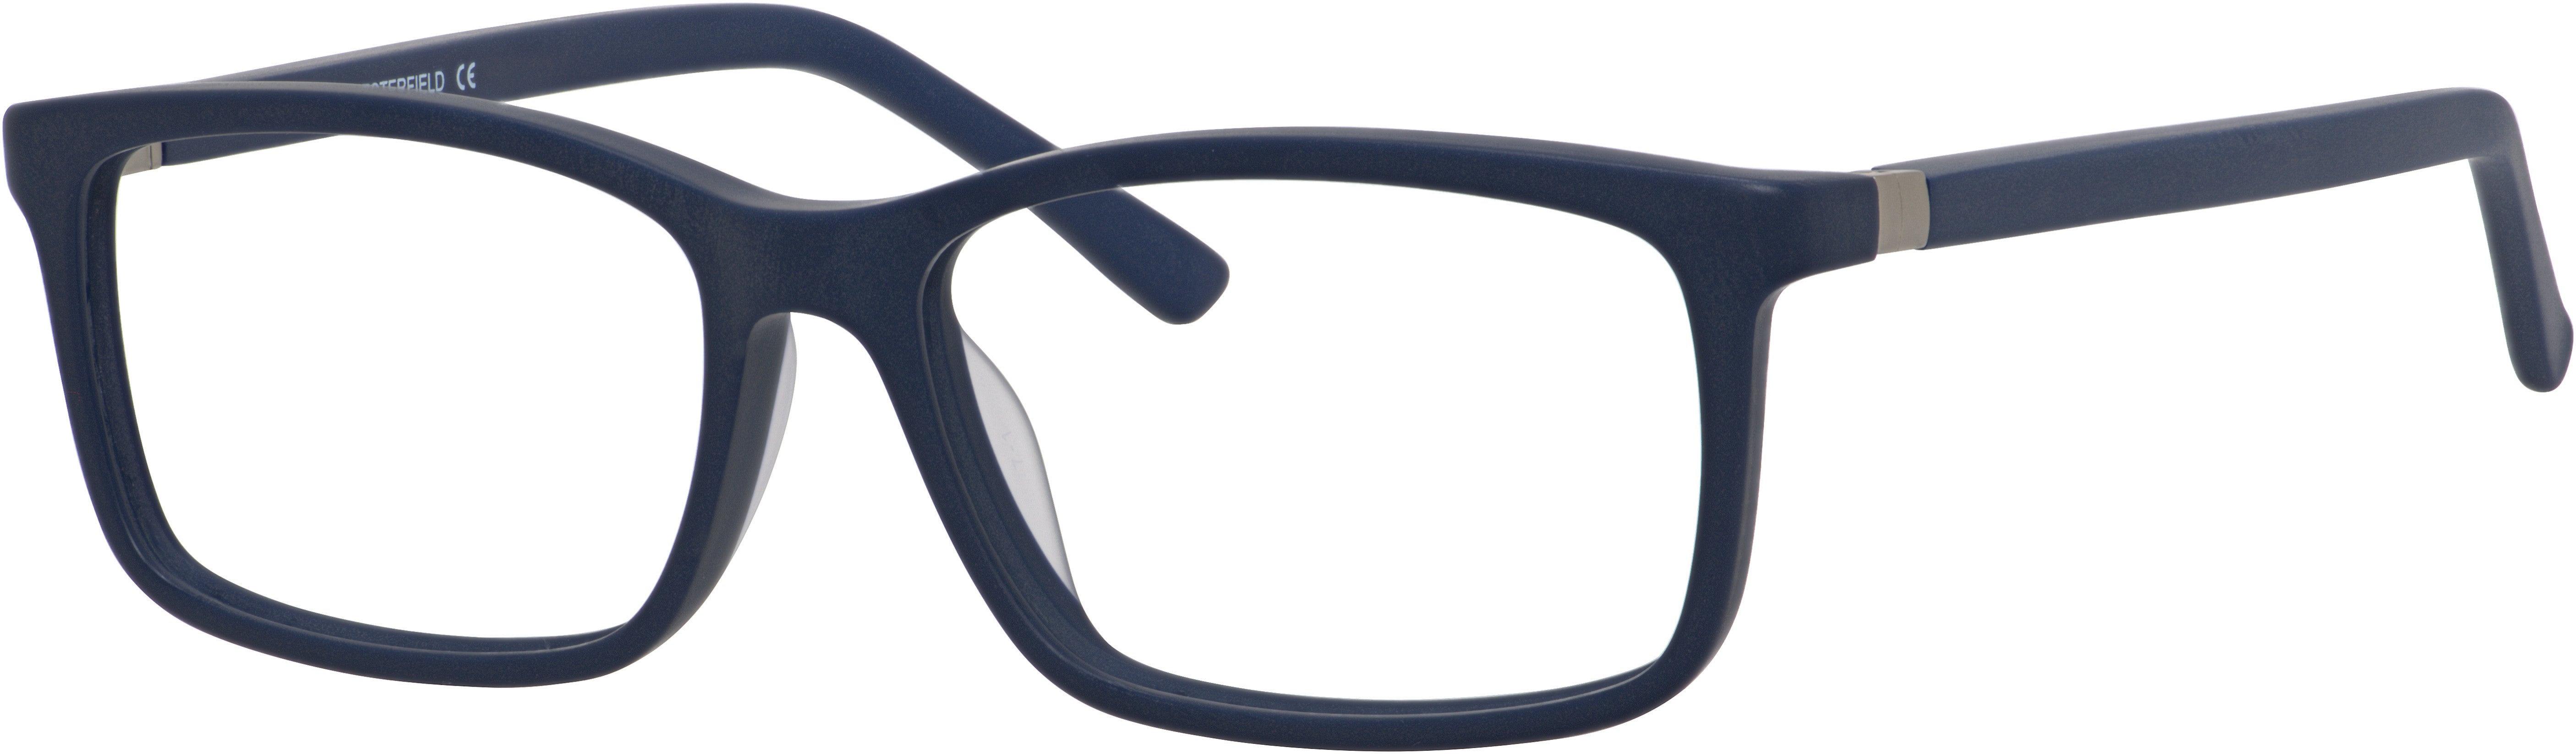  Chesterfield 51/XL Rectangular Eyeglasses 0FX8-0FX8  Navy (00 Demo Lens)